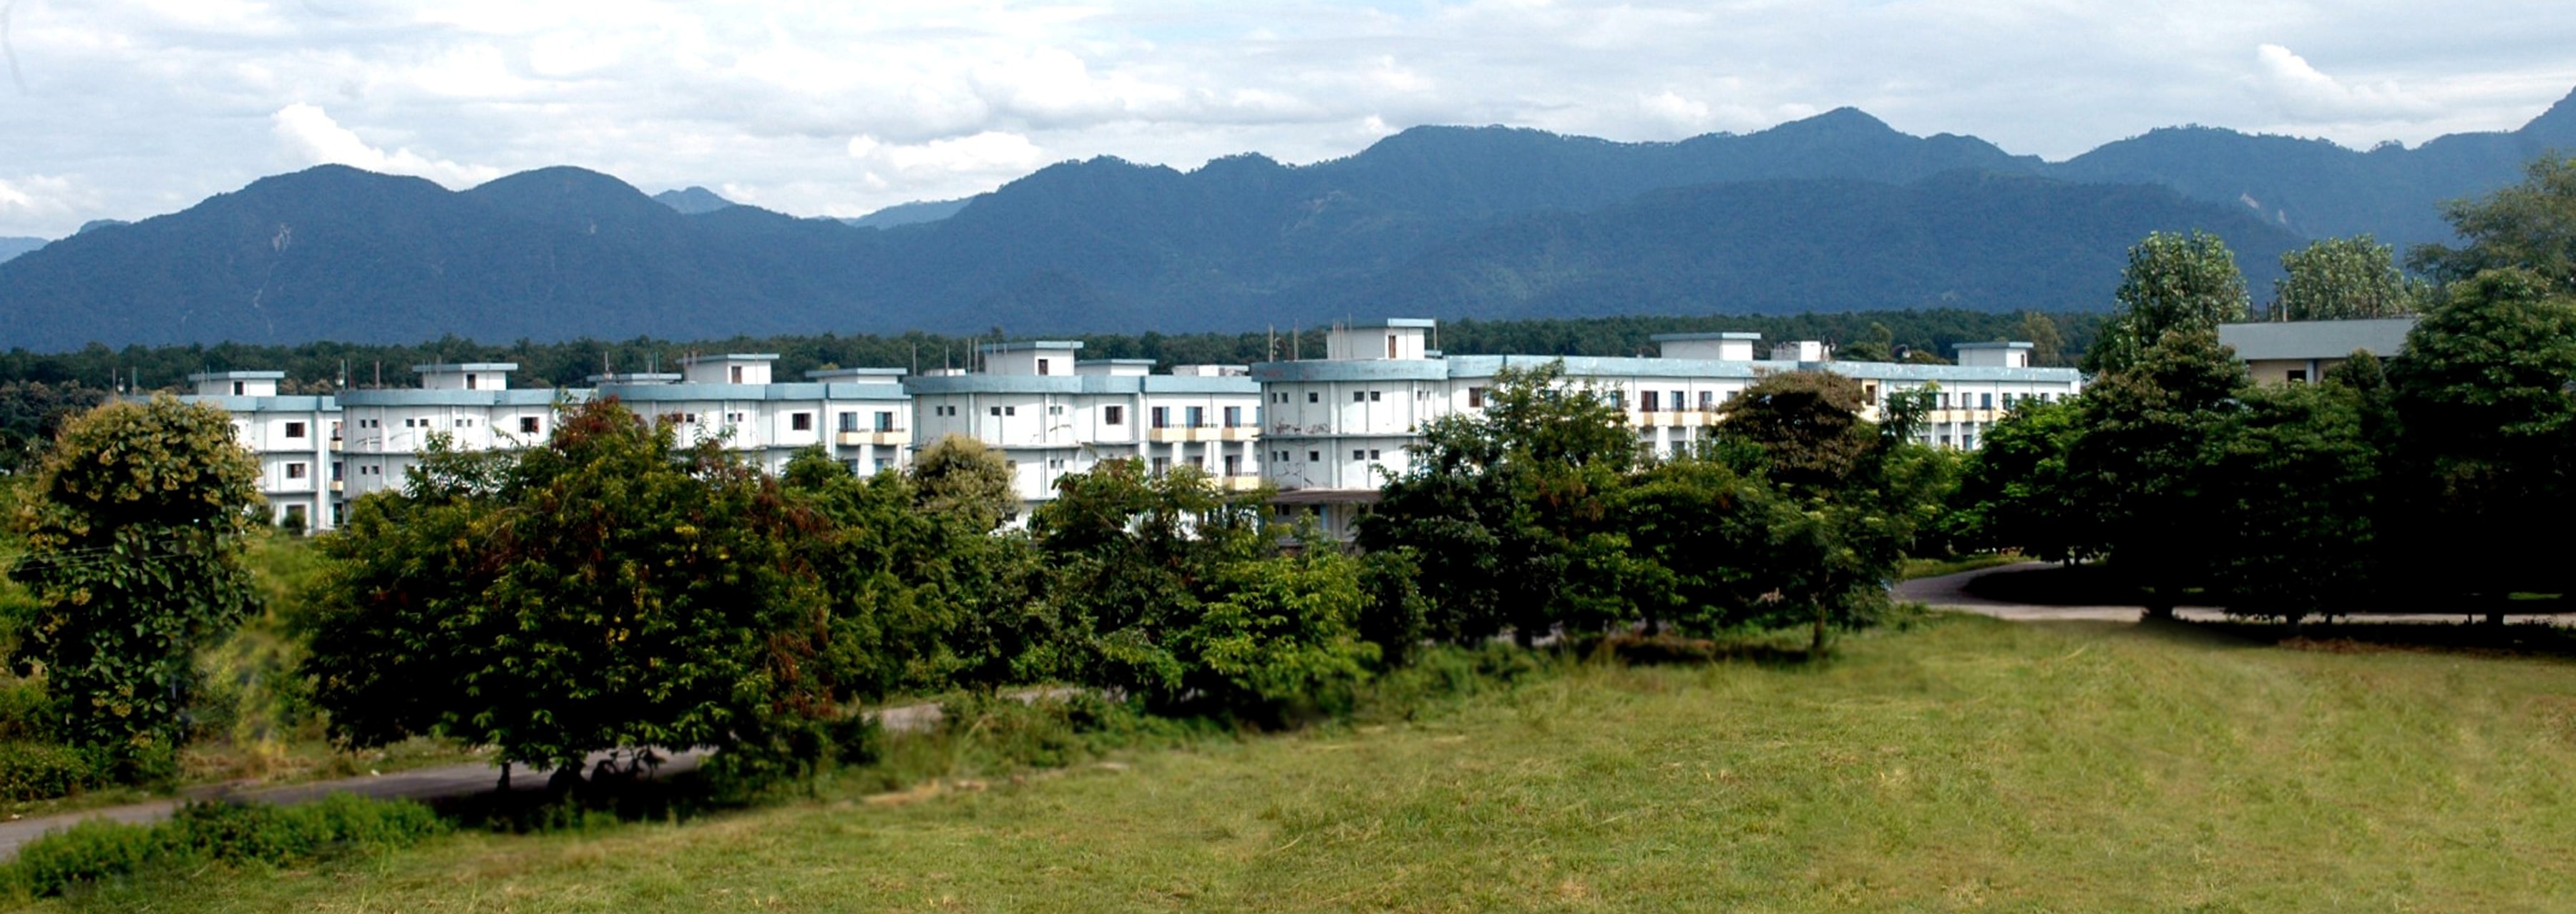 Swami Rama Himalayan University, Dehradun